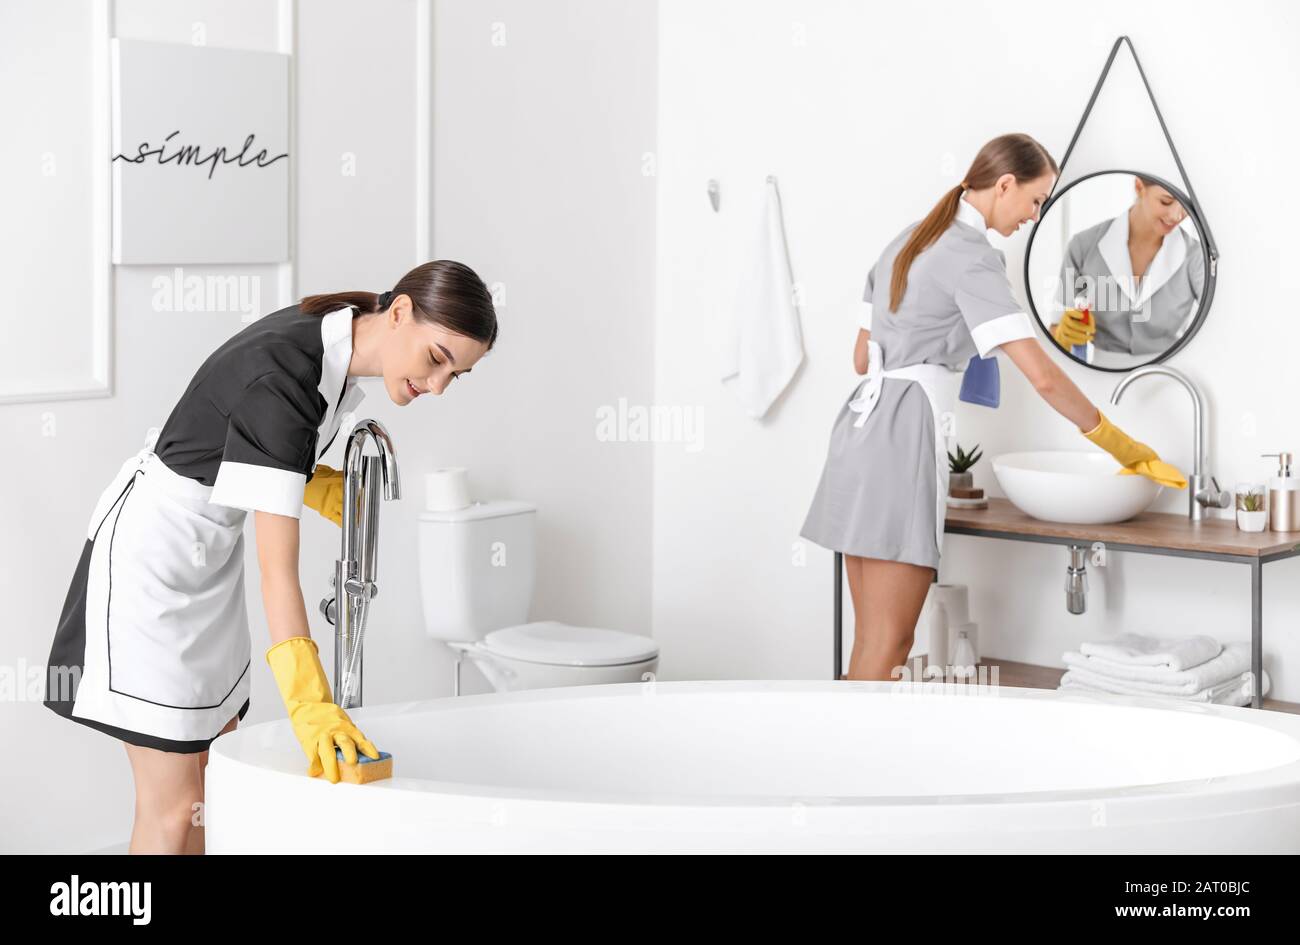 Belle chambre chambermaids nettoyage de la salle de bains de l'hôtel Banque D'Images